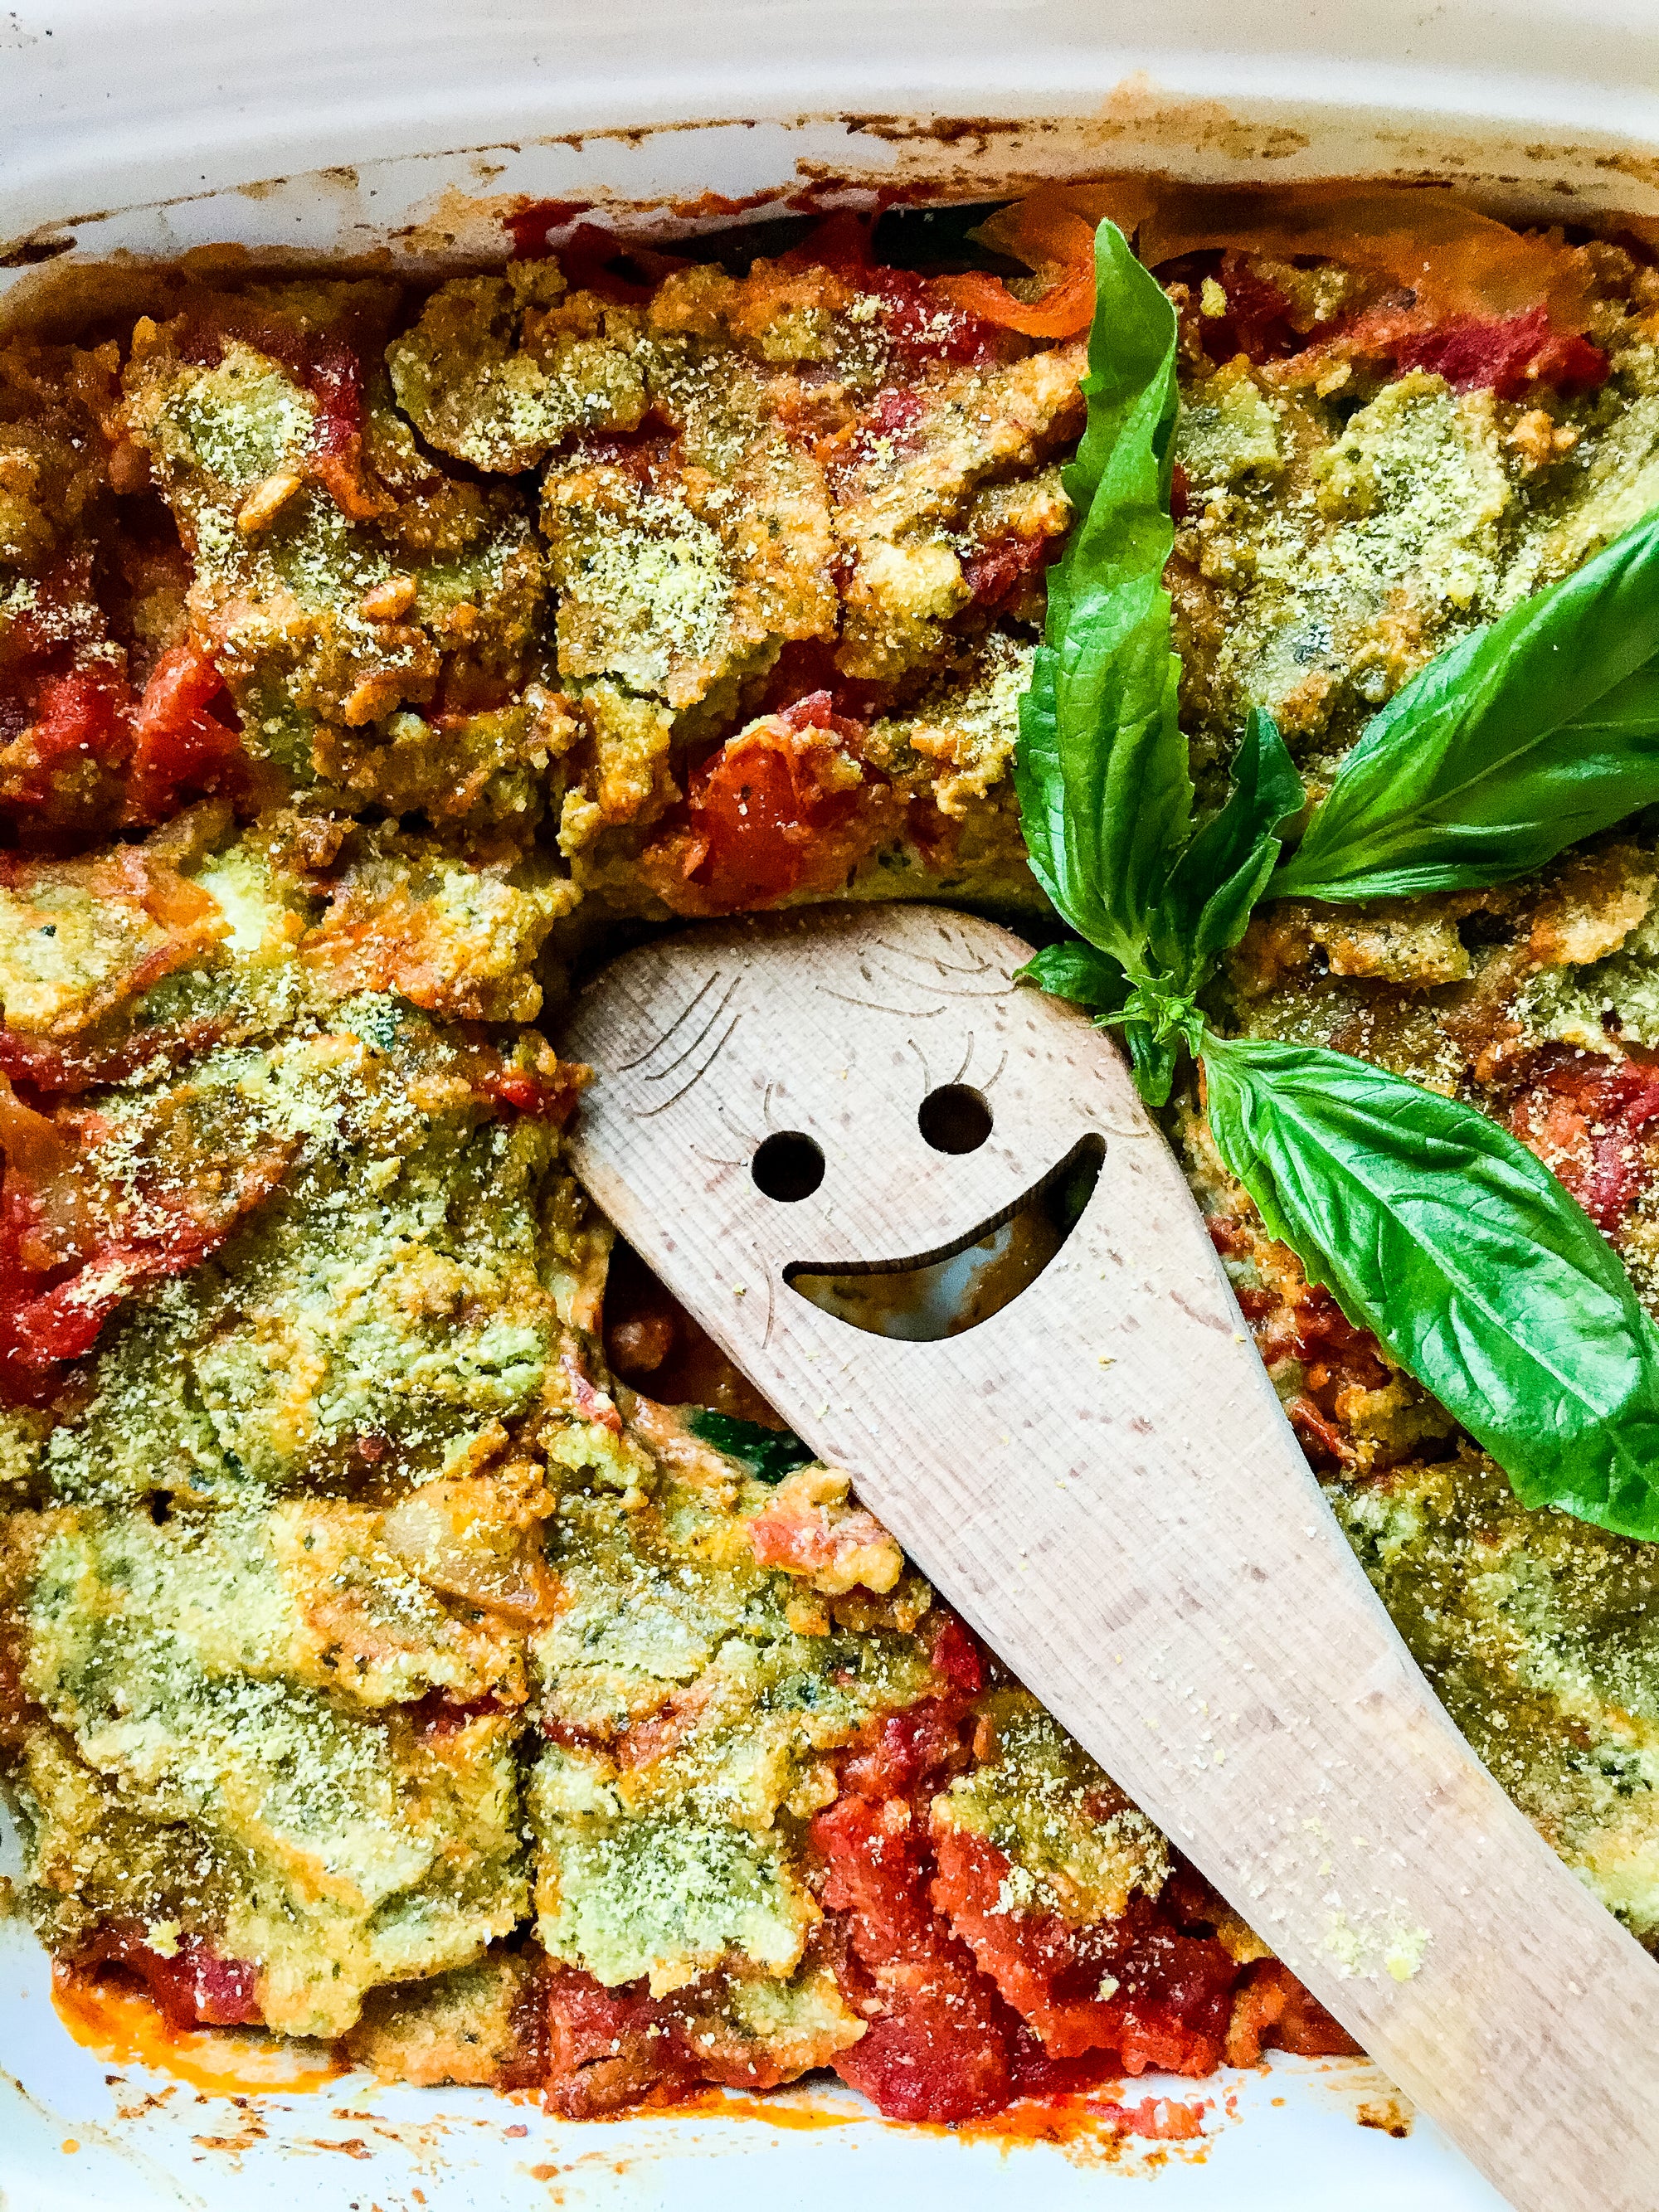 Veggie Lasagna